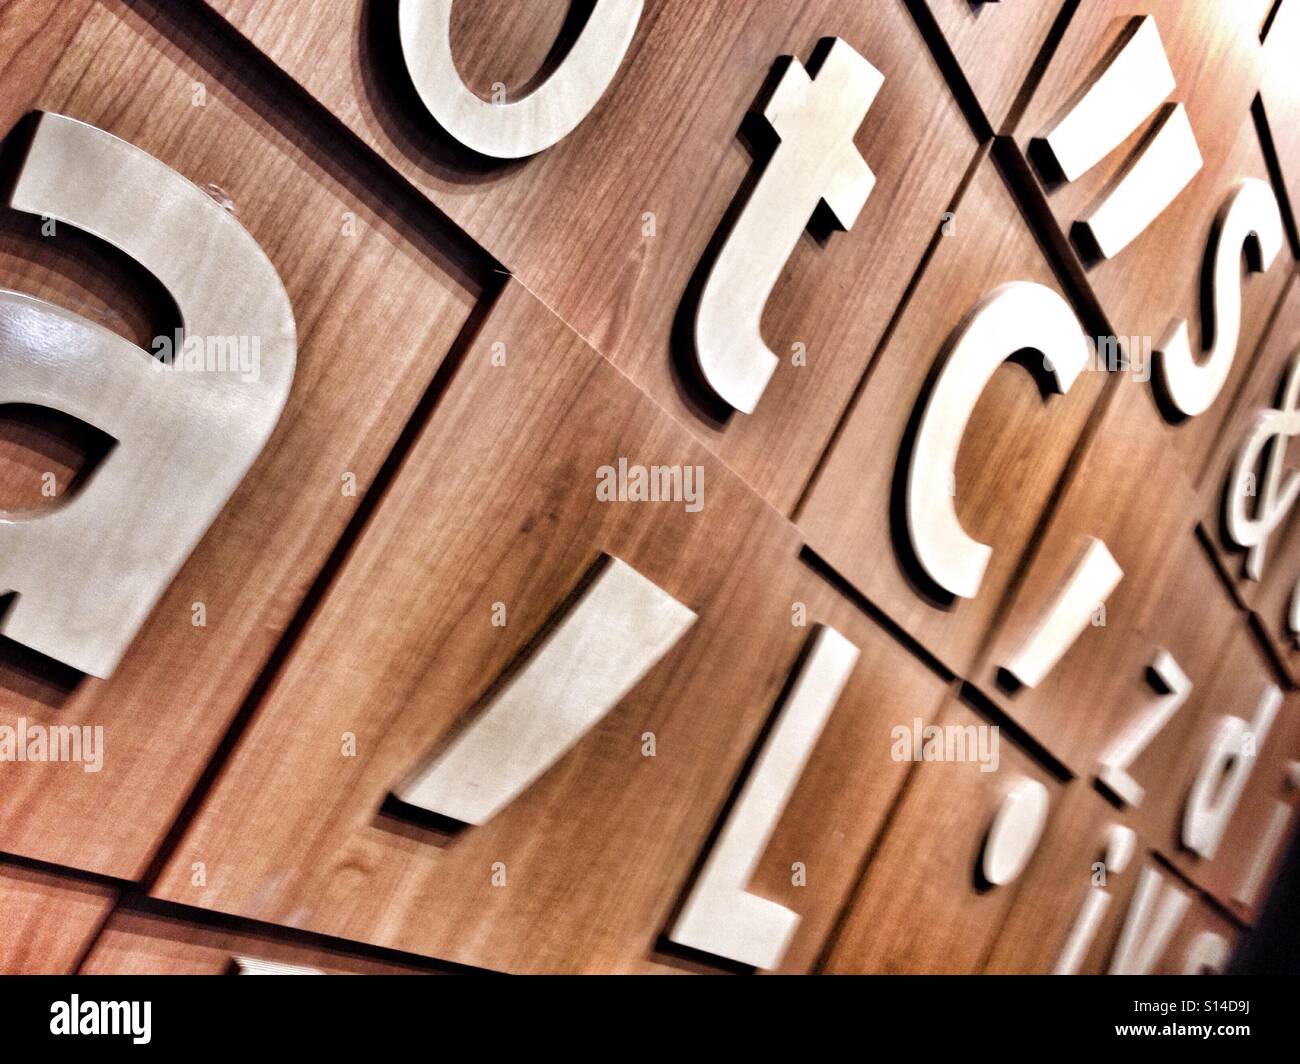 Zufällige Buchstaben, Satzzeichen, nutzen als Wandgestaltung und Interior Design Stockfoto